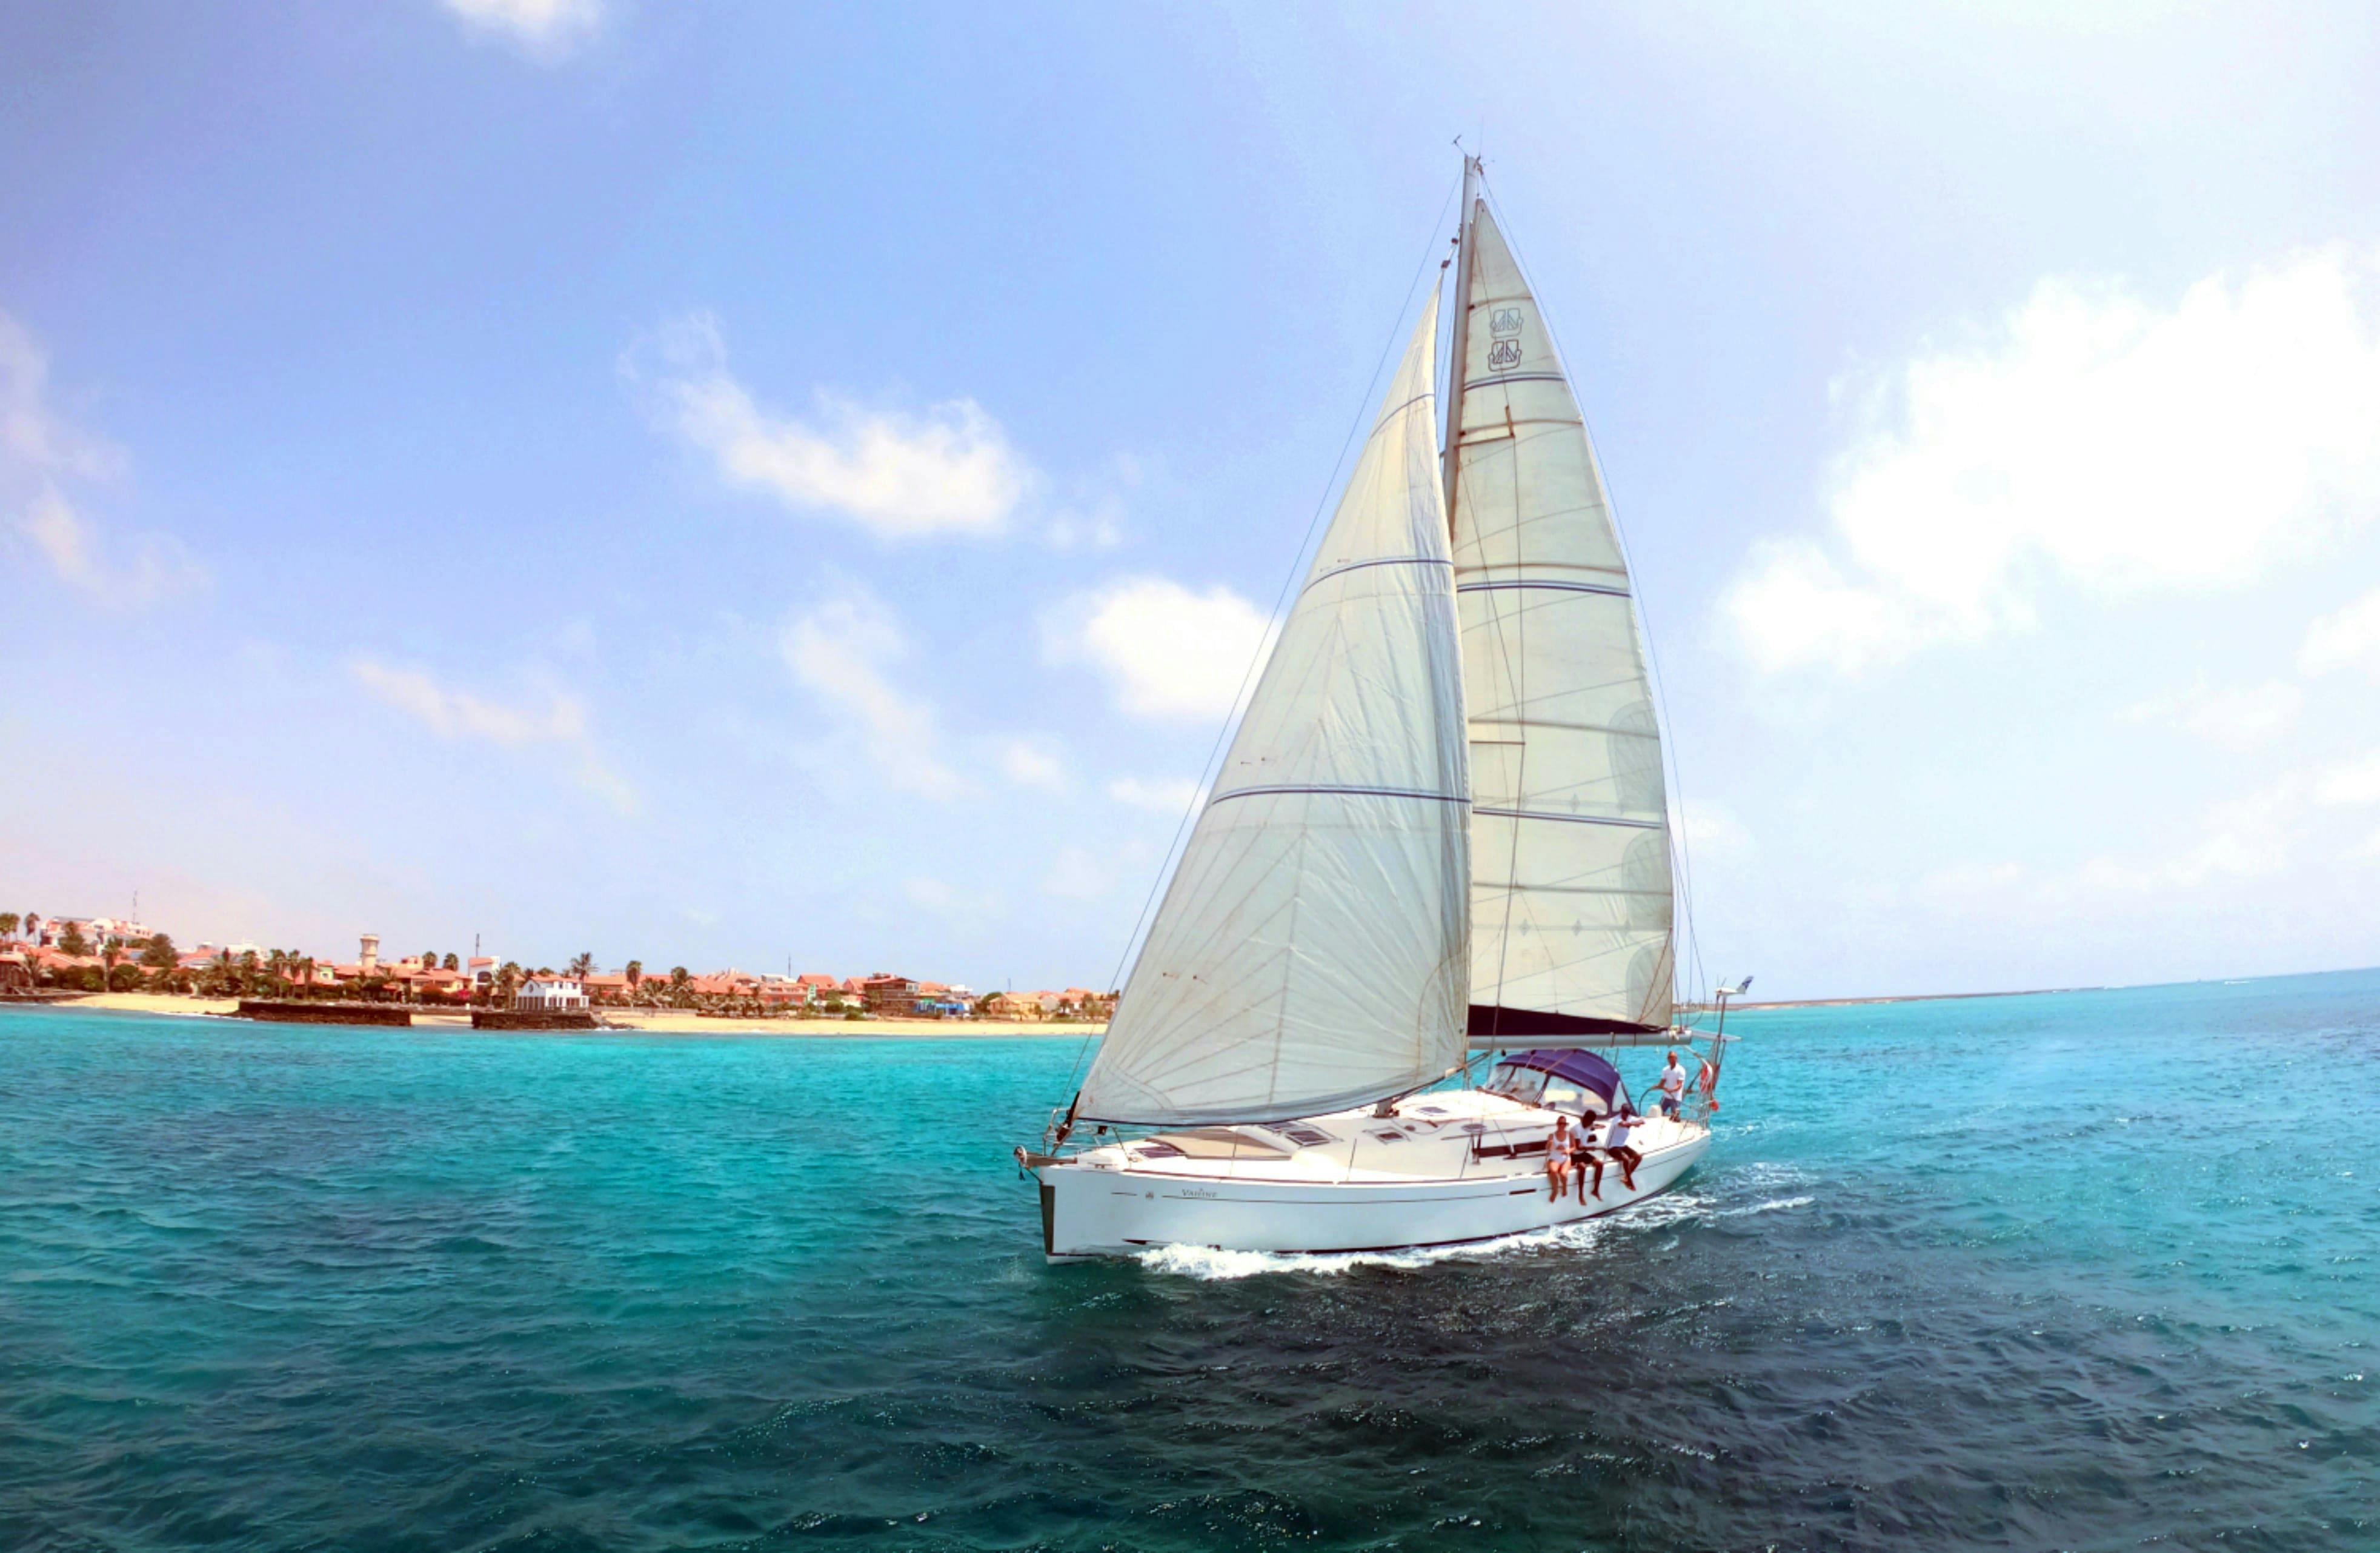 Cuba Libre Sailboat Cruise